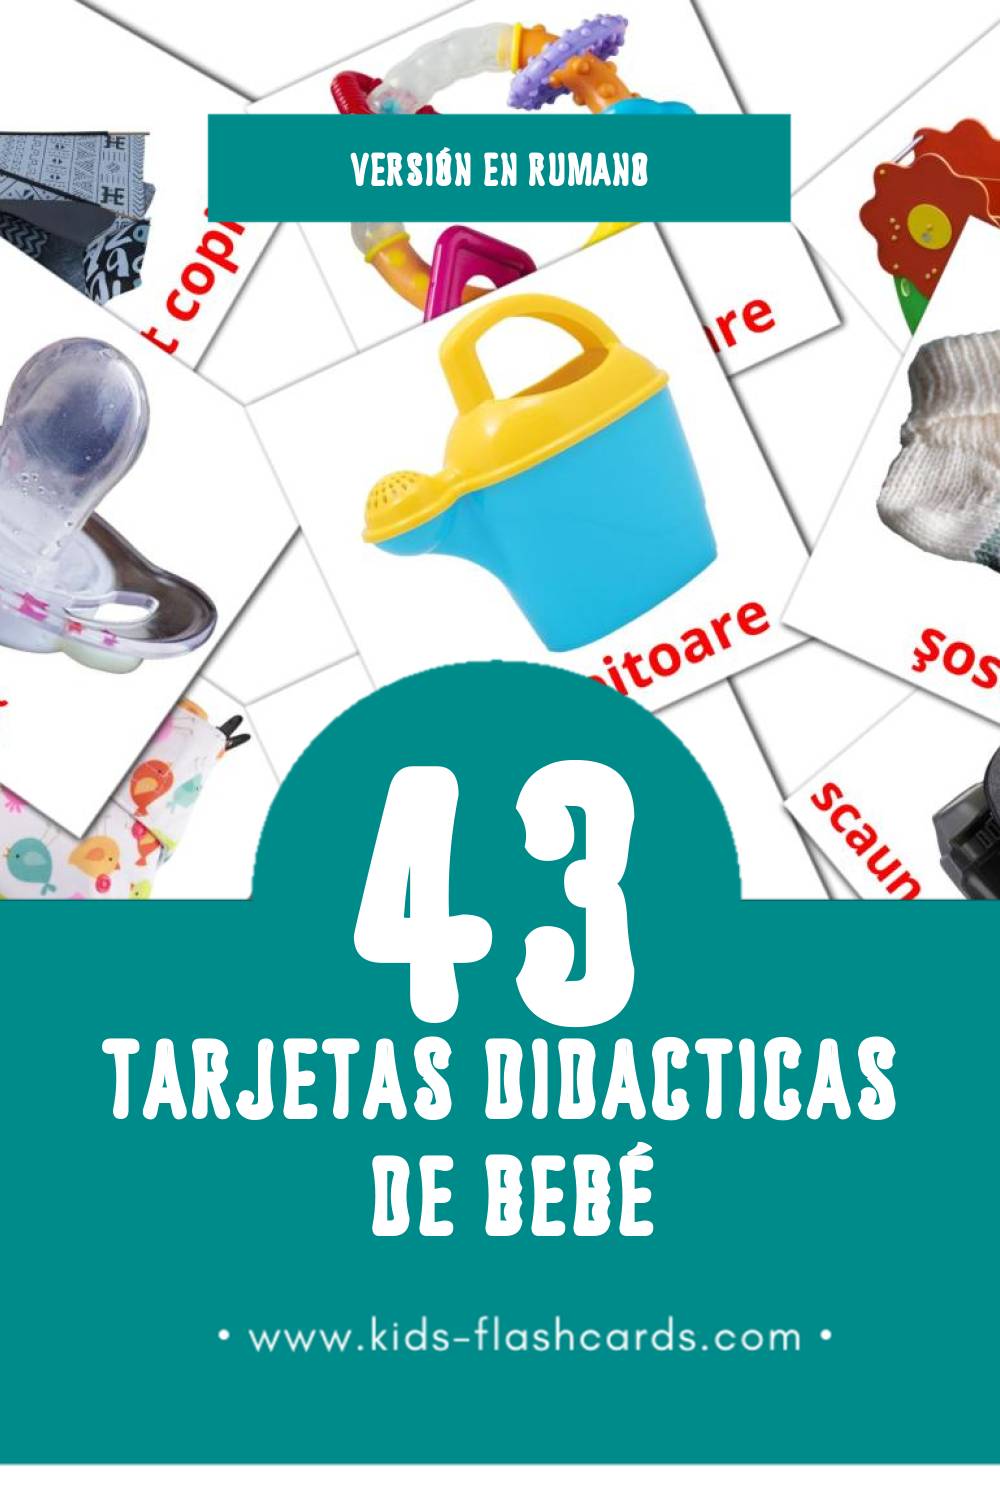 Tarjetas visuales de Bebe para niños pequeños (43 tarjetas en Rumano)